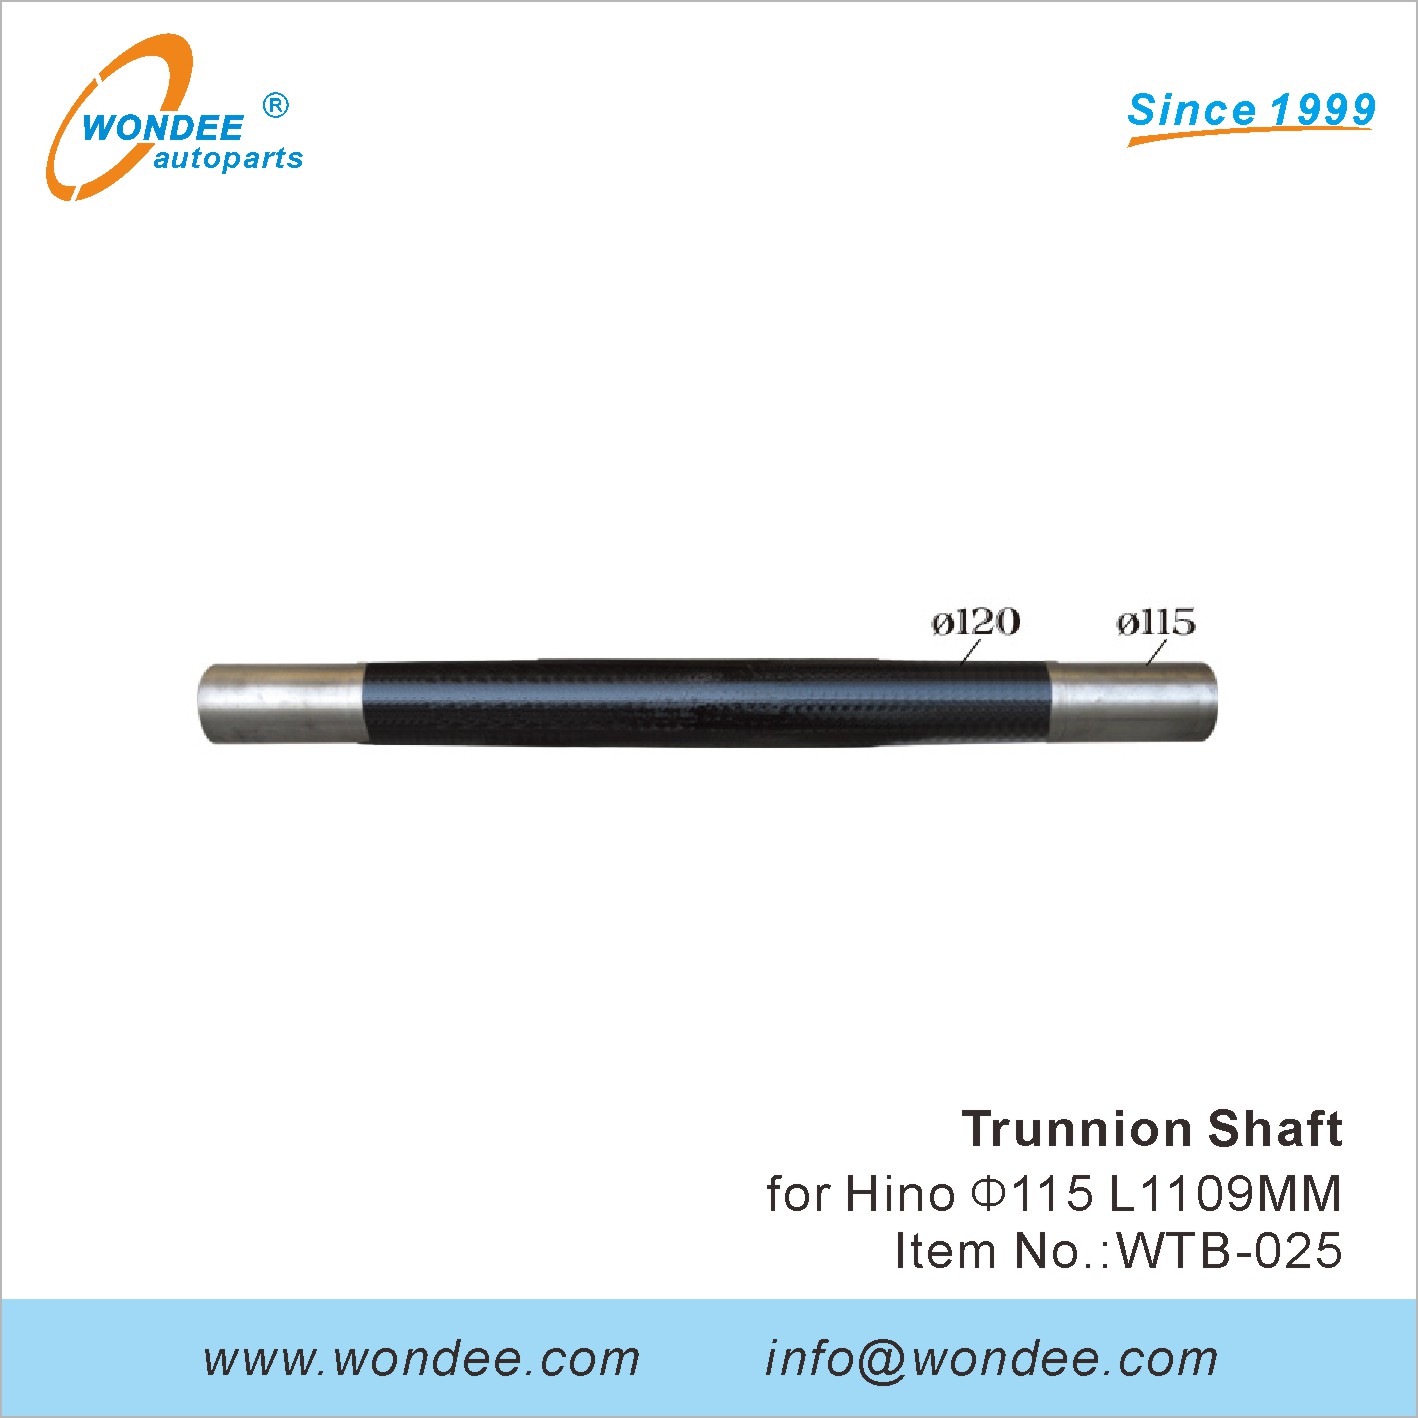 WONDEE trunnion shaft (25)